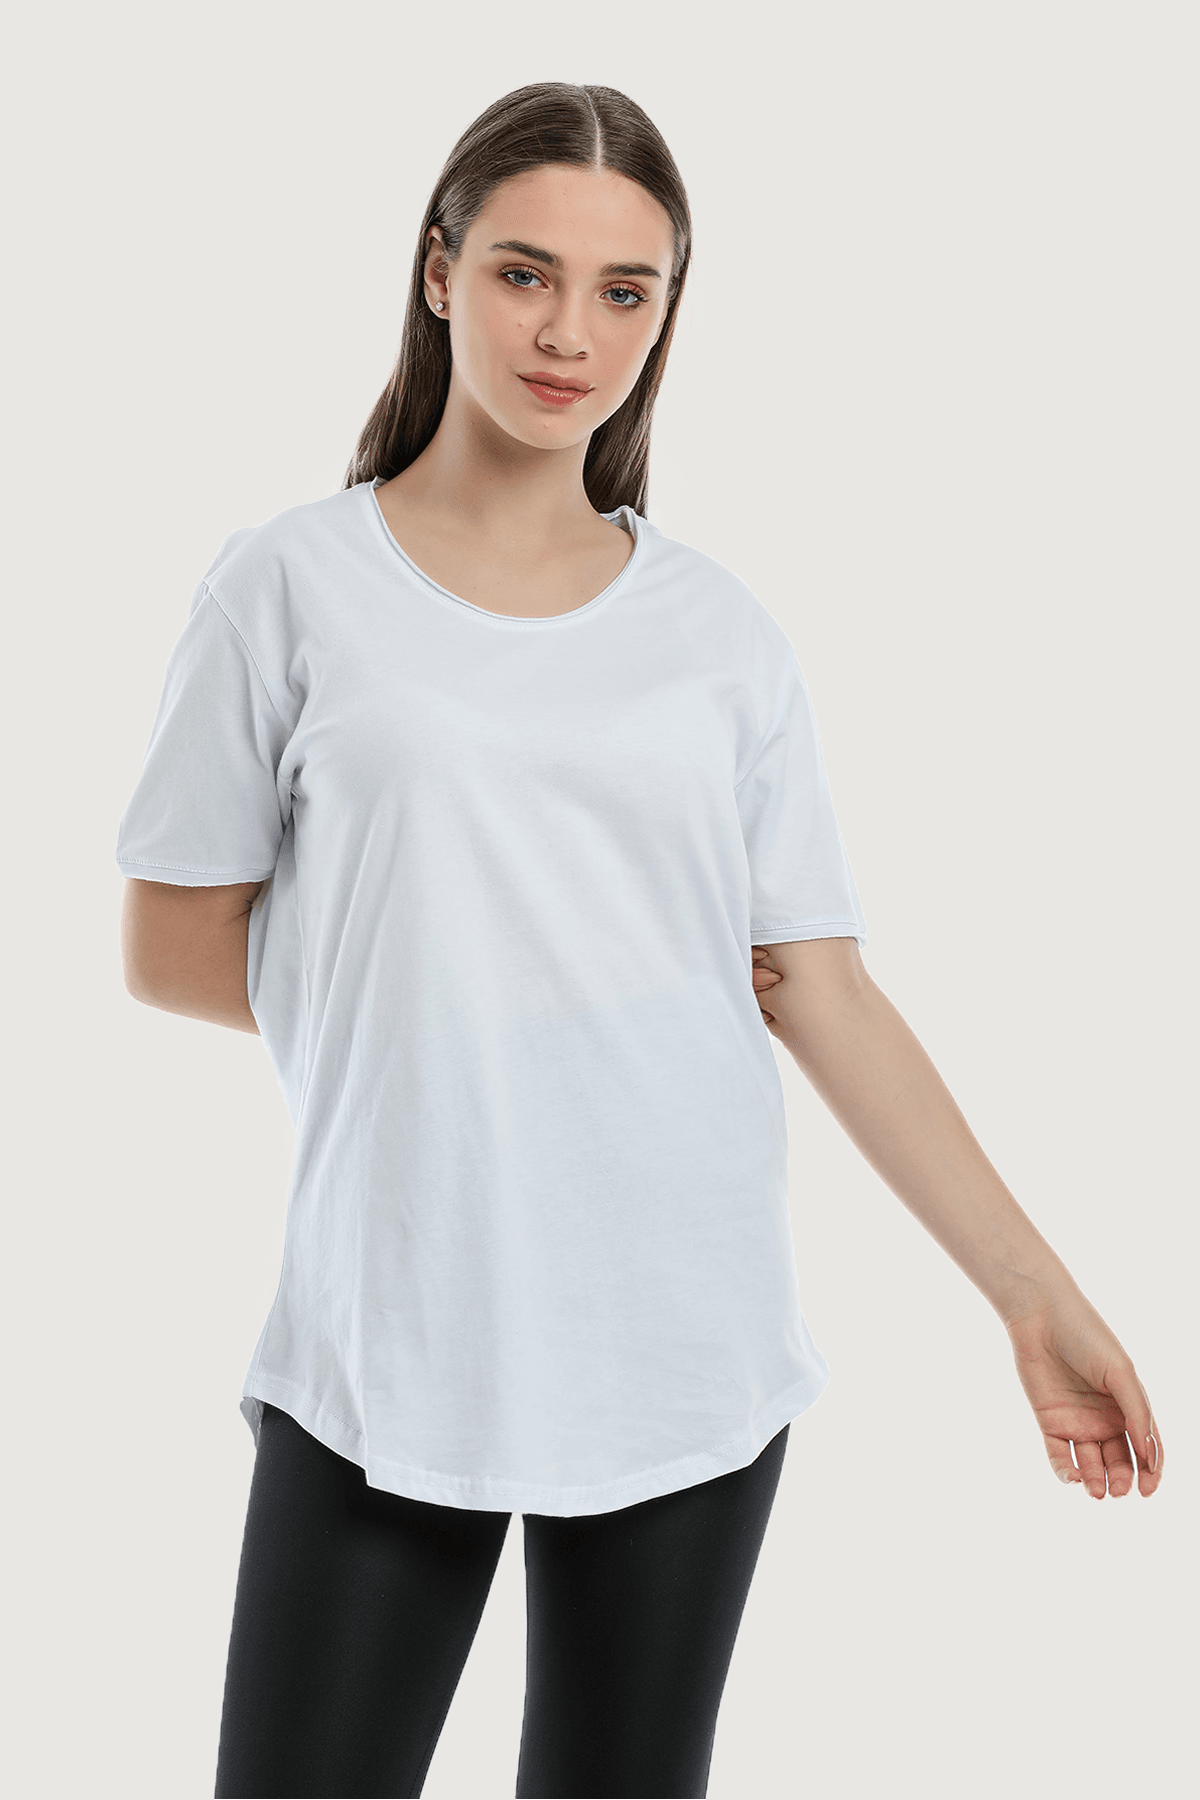 Camiseta básica holgada y cómoda para mujer - Blanca